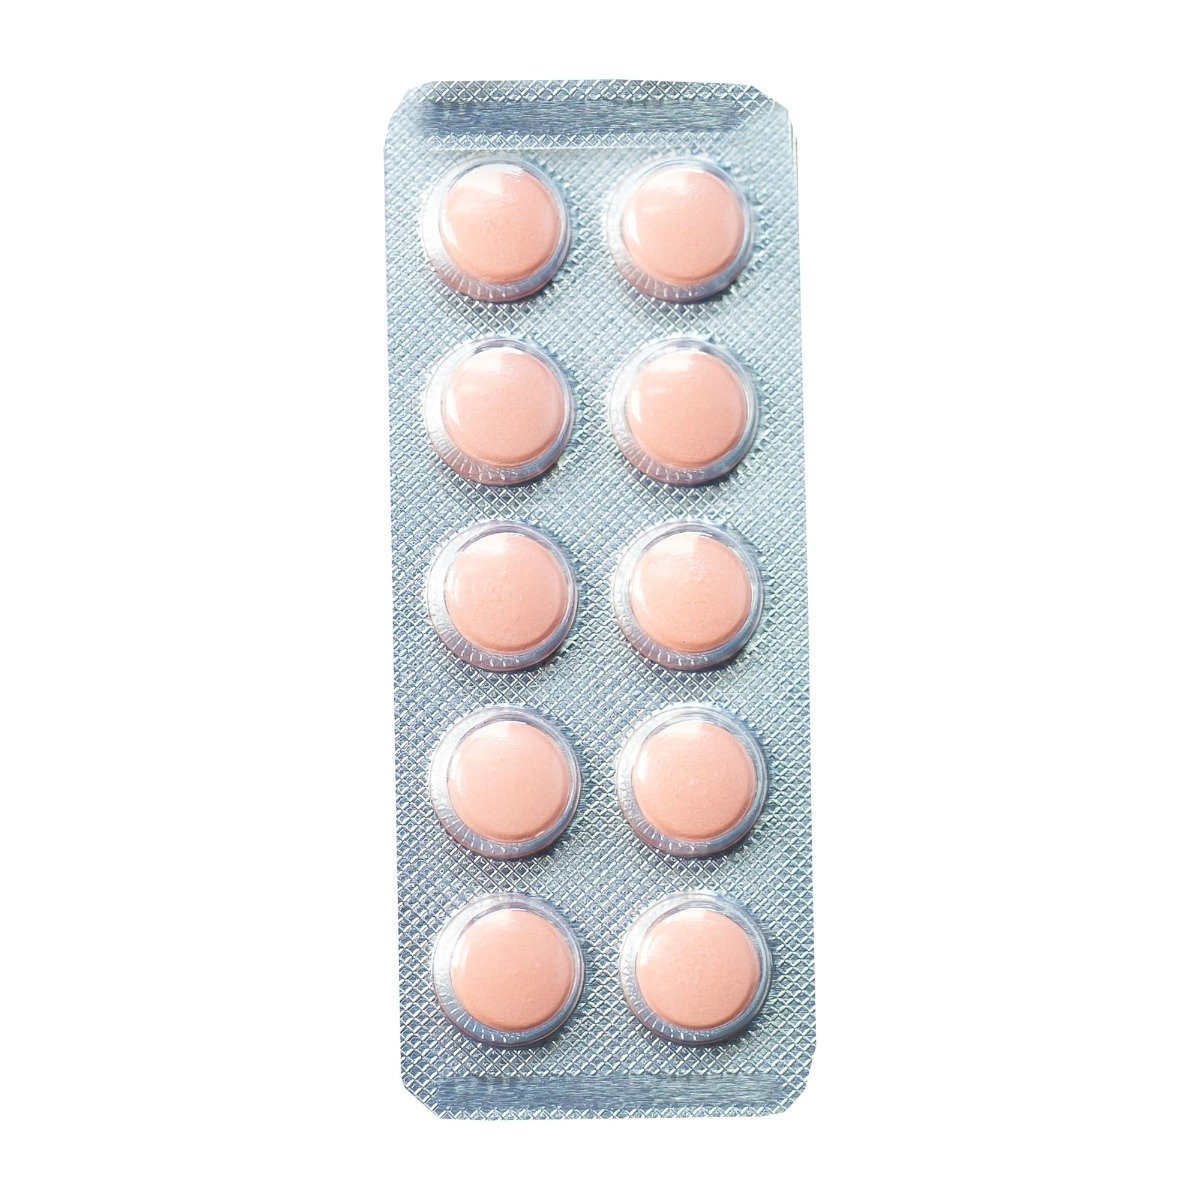 Voltaren SR 100 mg - 20 Tablets - Bloom Pharmacy